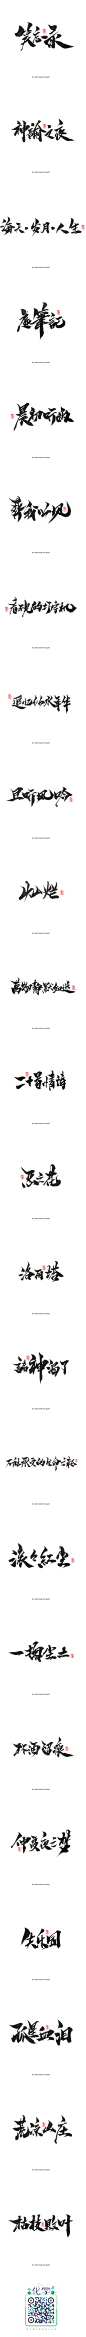 【灵度】手写书法字体 | 2016年终篇2_字体传奇网-中国首个字体品牌设计师交流网 #字体#